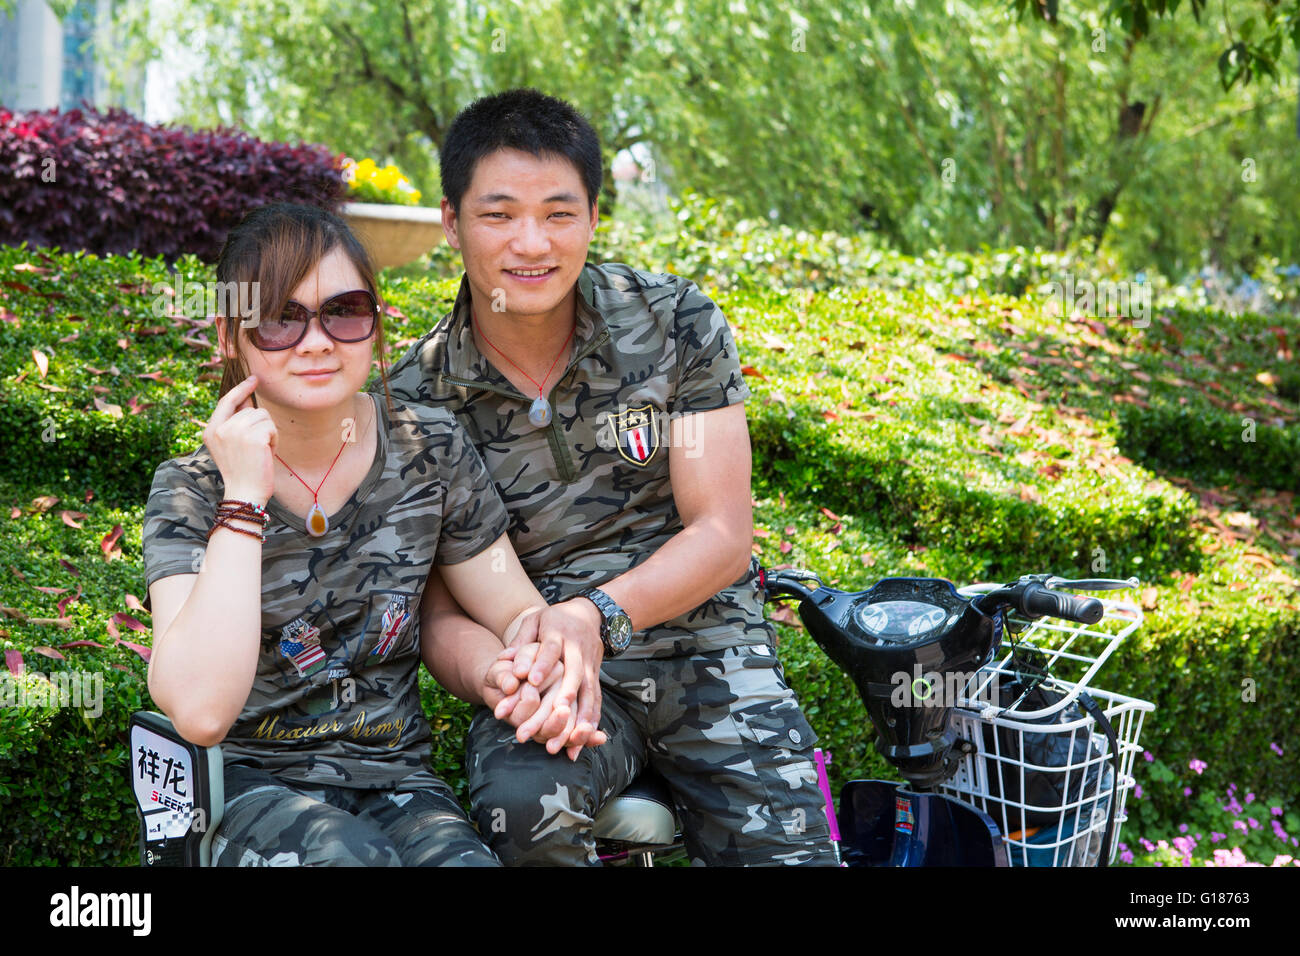 Jeune couple chinois romantique sur un scooter se tenant par la main dans le parc portant un uniforme de l'armée militaire Banque D'Images